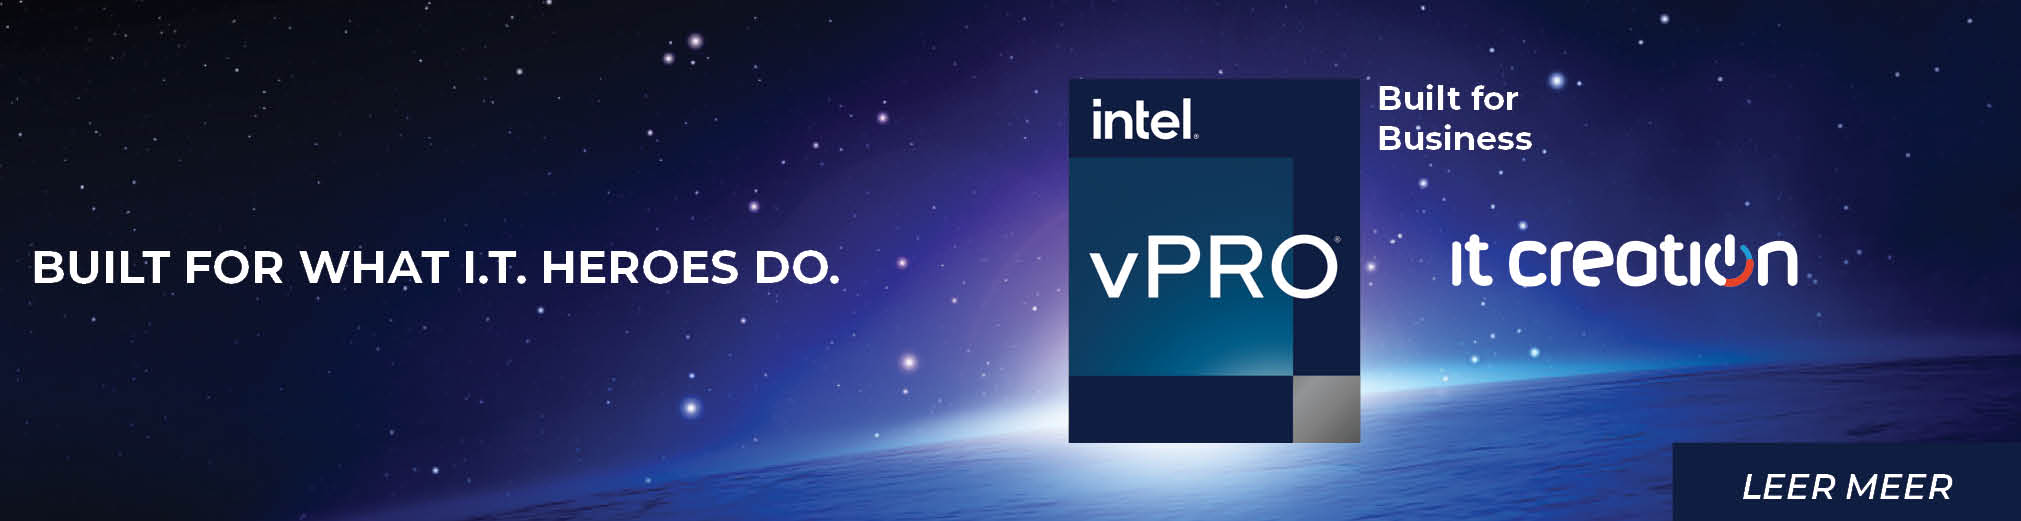 Intel Vpro - Built for business